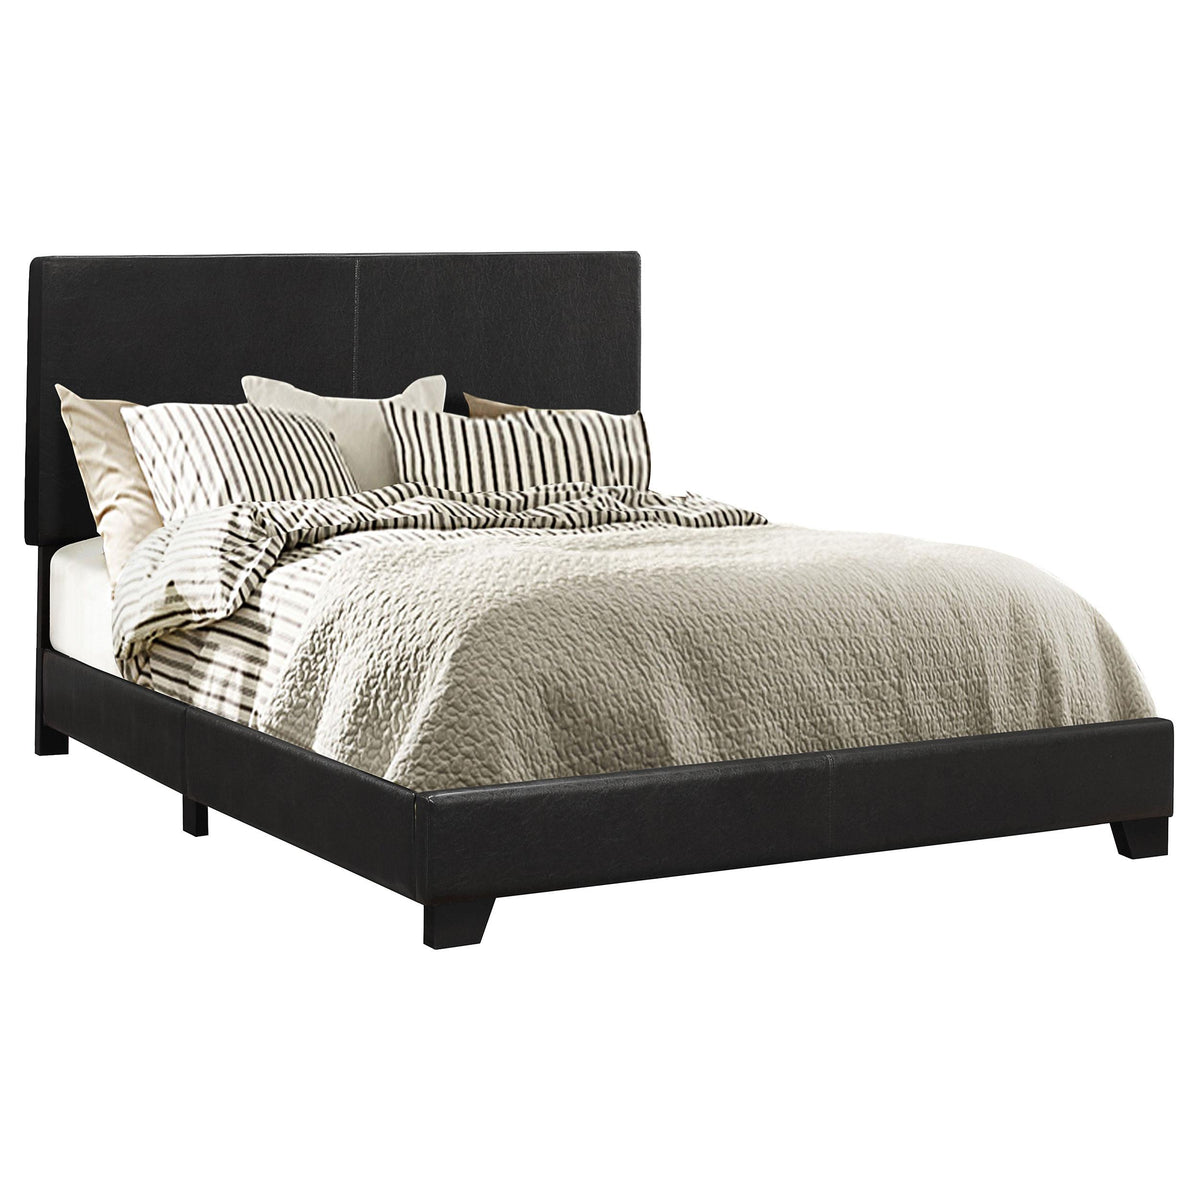 Dorian Upholstered Eastern King Bed Black  Half Price Furniture